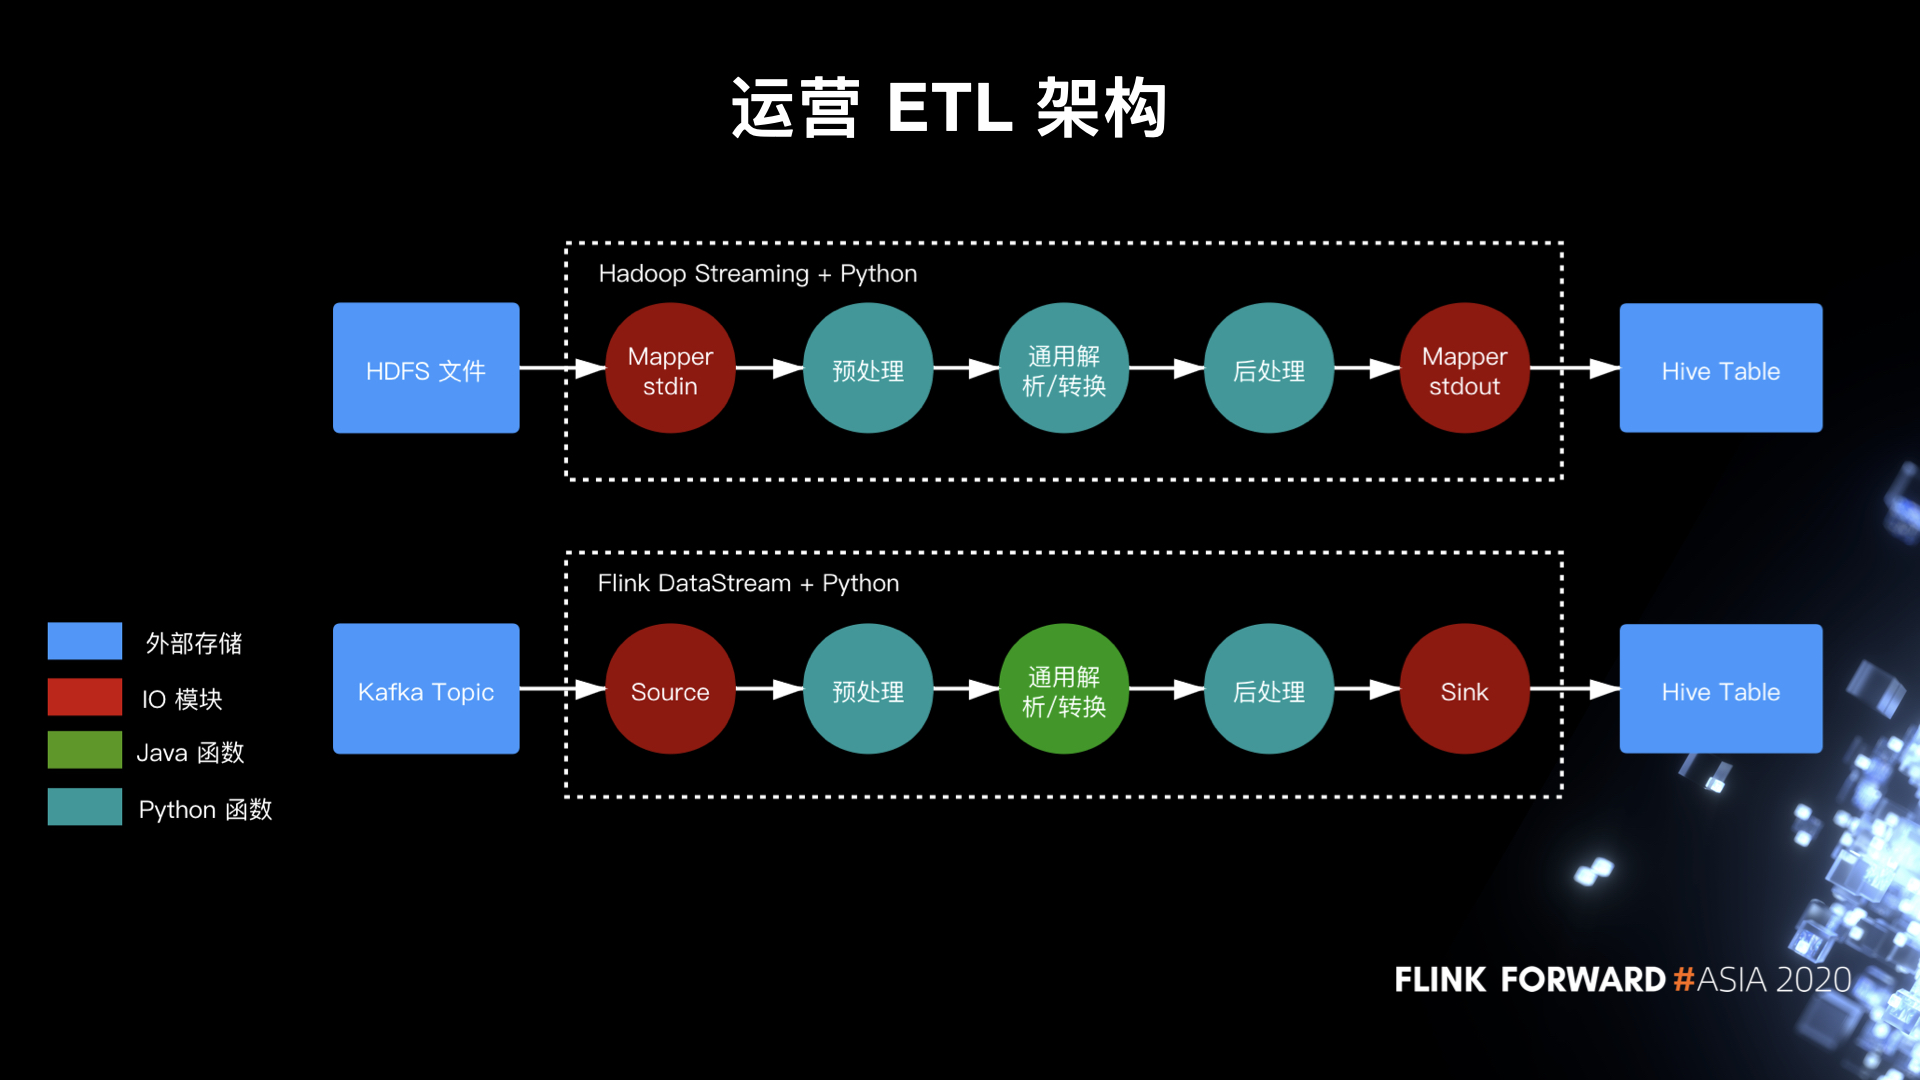 图6. 运营日志 ETL 架构